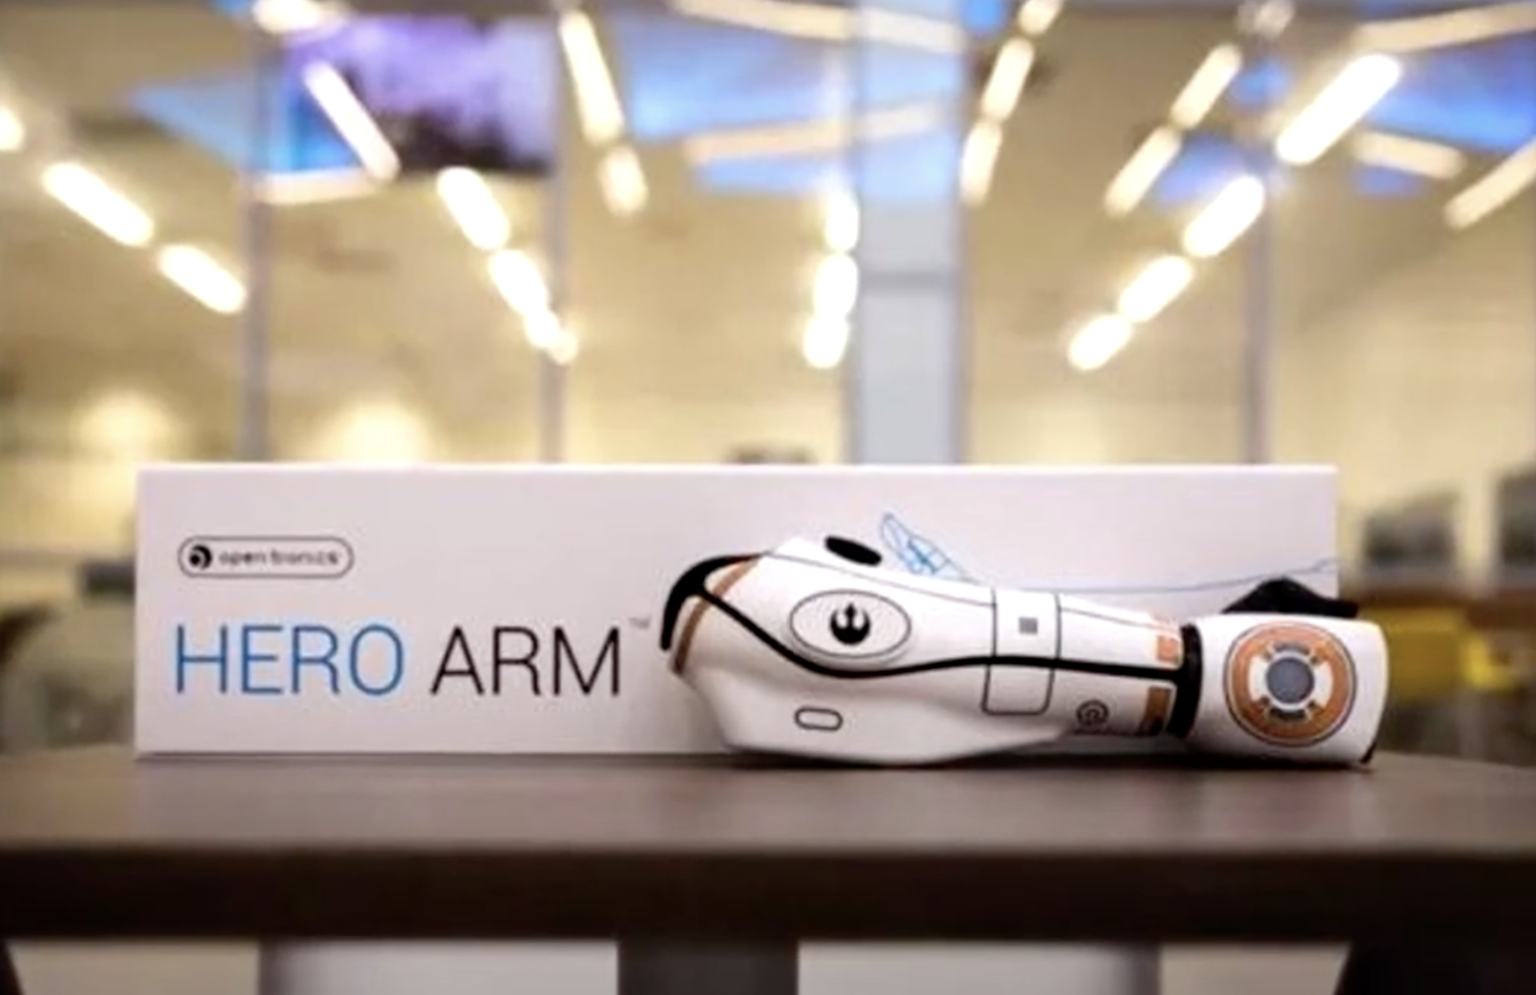 hero arm, bionics, open bionics